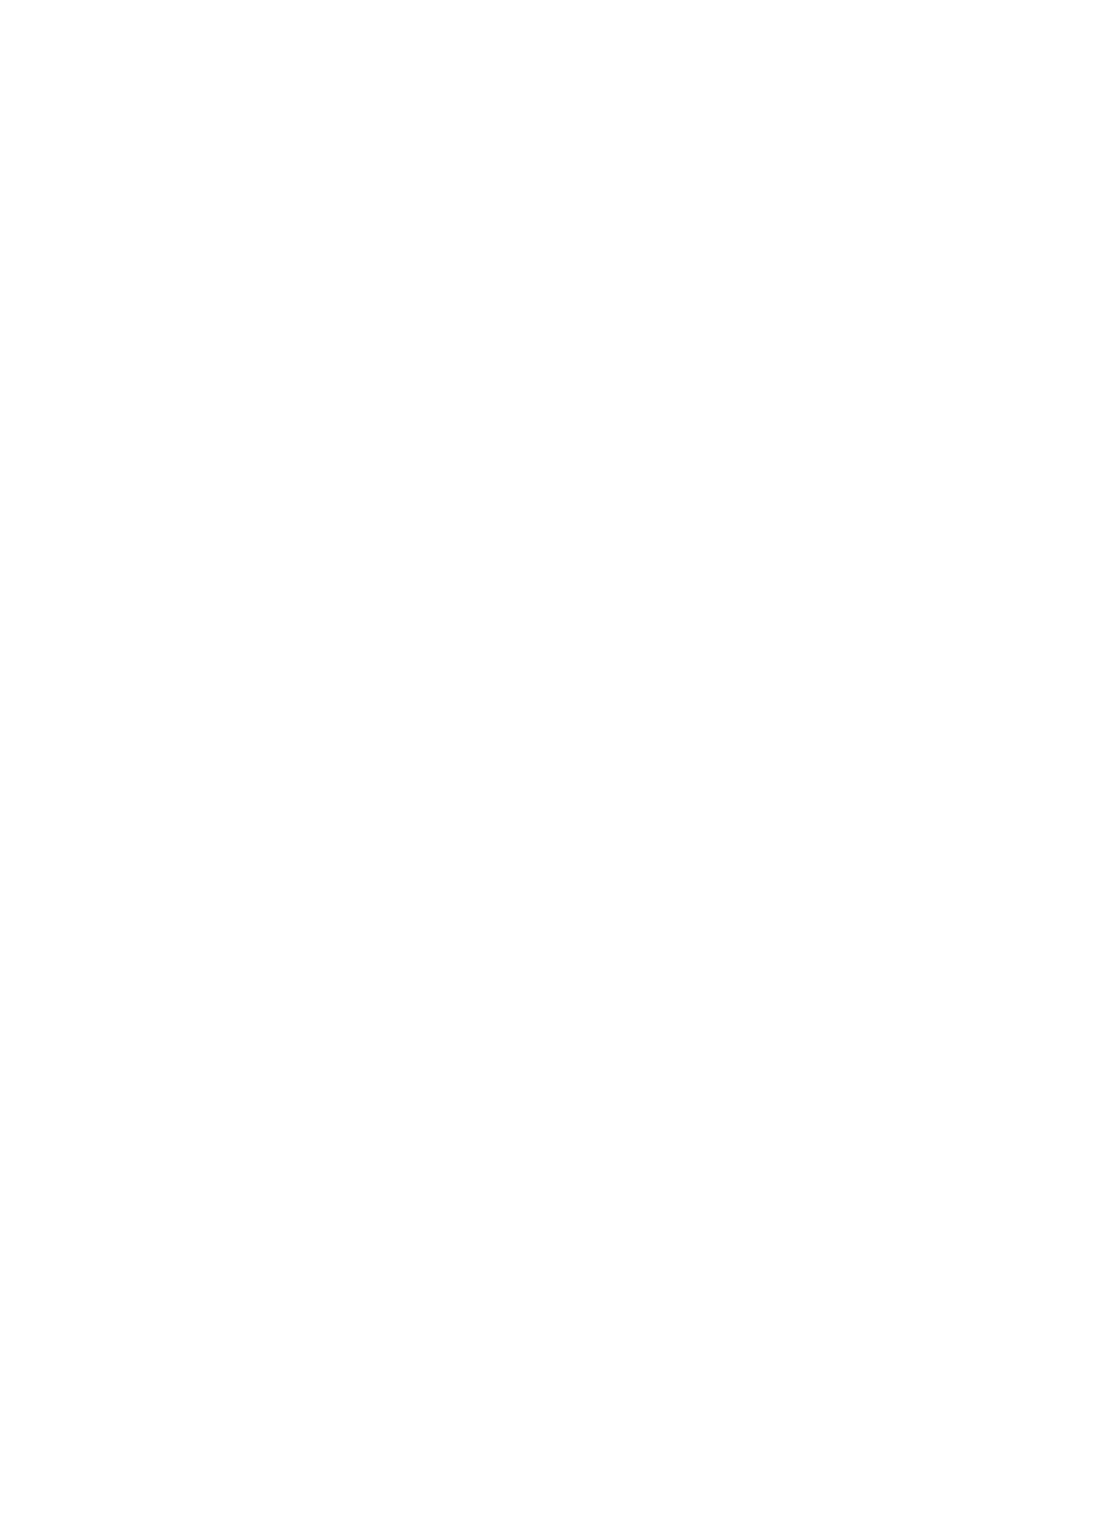 Koenig & Bauer logo for dark backgrounds (transparent PNG)